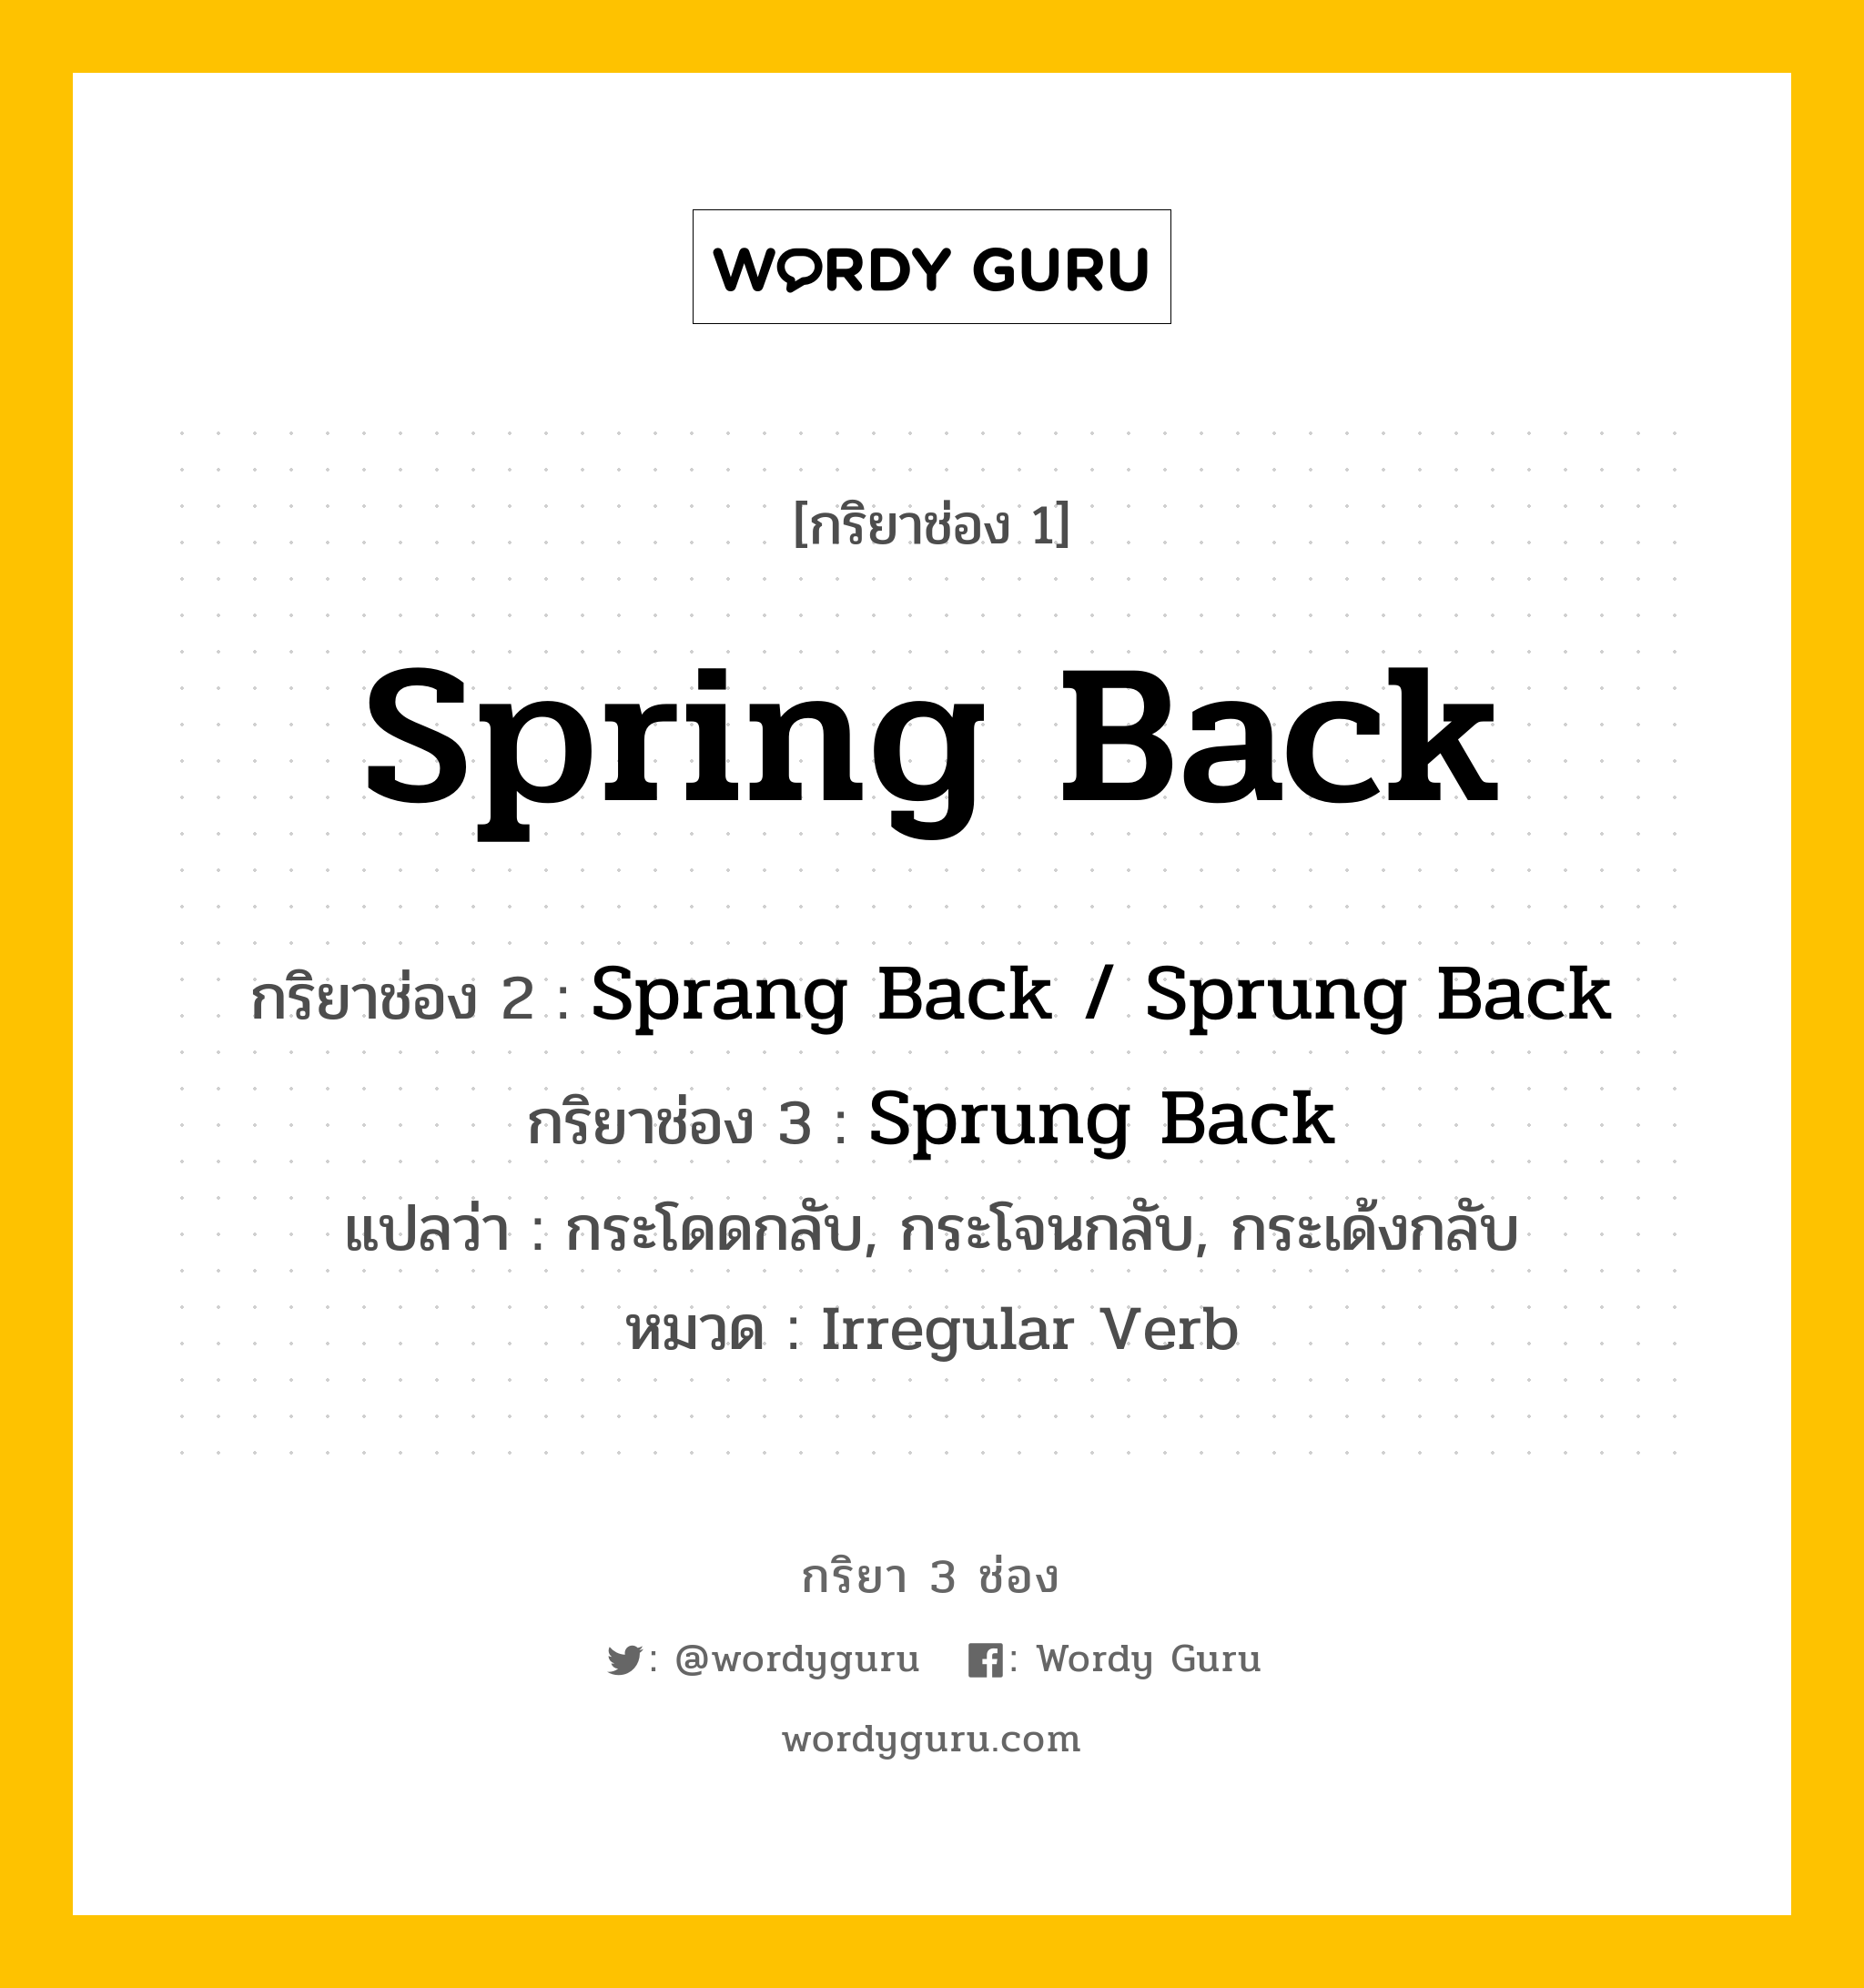 กริยา 3 ช่อง: Spring Back ช่อง 2 Spring Back ช่อง 3 คืออะไร, กริยาช่อง 1 Spring Back กริยาช่อง 2 Sprang Back / Sprung Back กริยาช่อง 3 Sprung Back แปลว่า กระโดดกลับ, กระโจนกลับ, กระเด้งกลับ หมวด Irregular Verb หมวด Irregular Verb